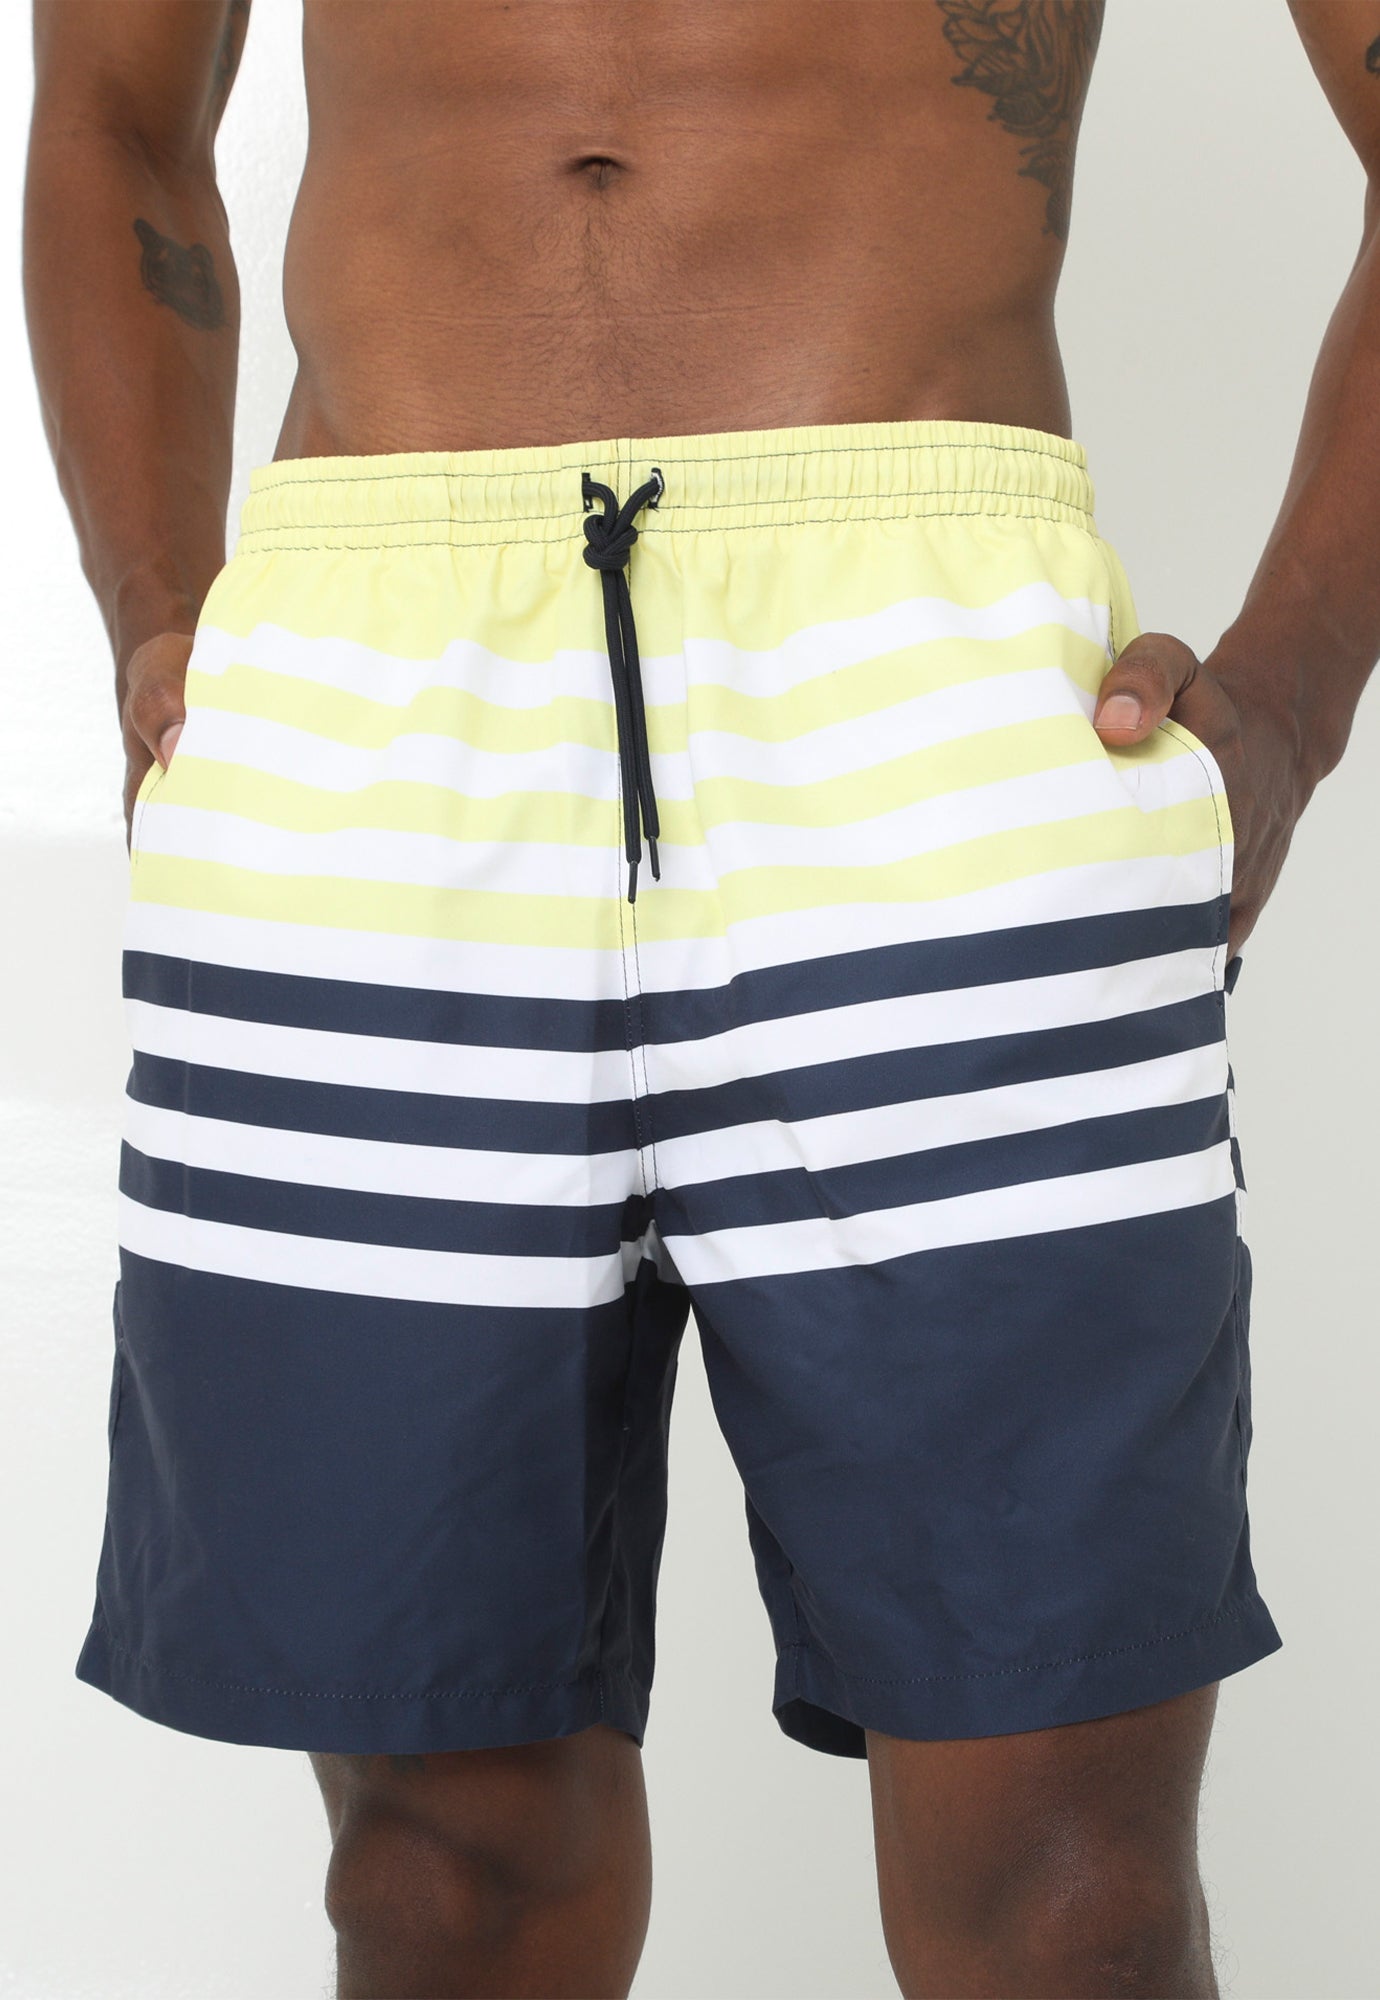 Pantaloneta playera amarillo crispeta en bloques, cordón ajustable y suspensorio interno en malla para hombre